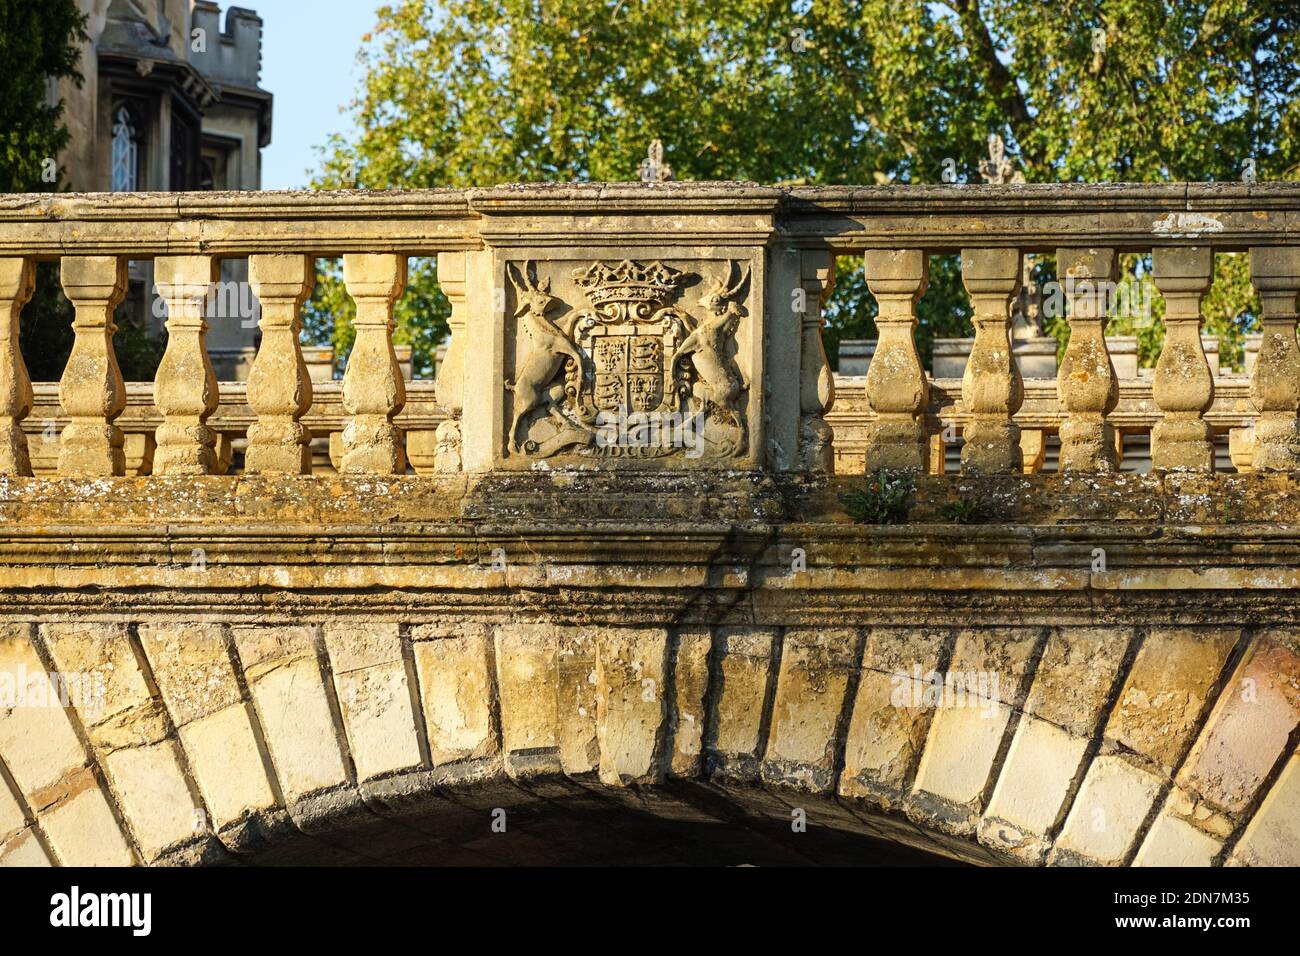 Die Kitchen Bridge über den Fluss Cam in Cambridge, Cambridgeshire England Vereinigtes Königreich Großbritannien Stockfoto